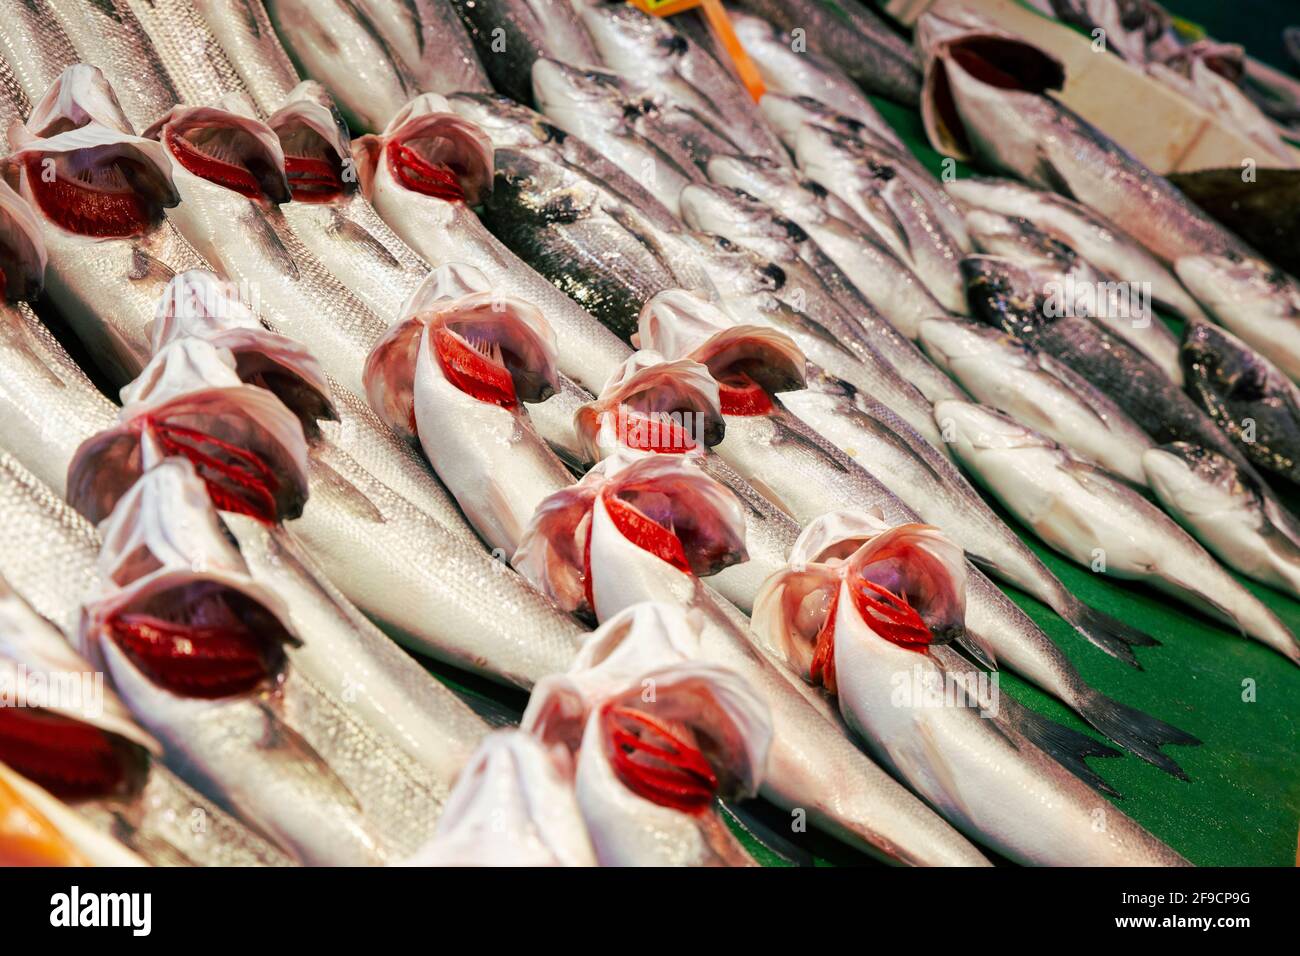 Immagine full frame del pesce sgombro mediterraneo sul bancone, con branchie aperte, rosso e fresco Foto Stock